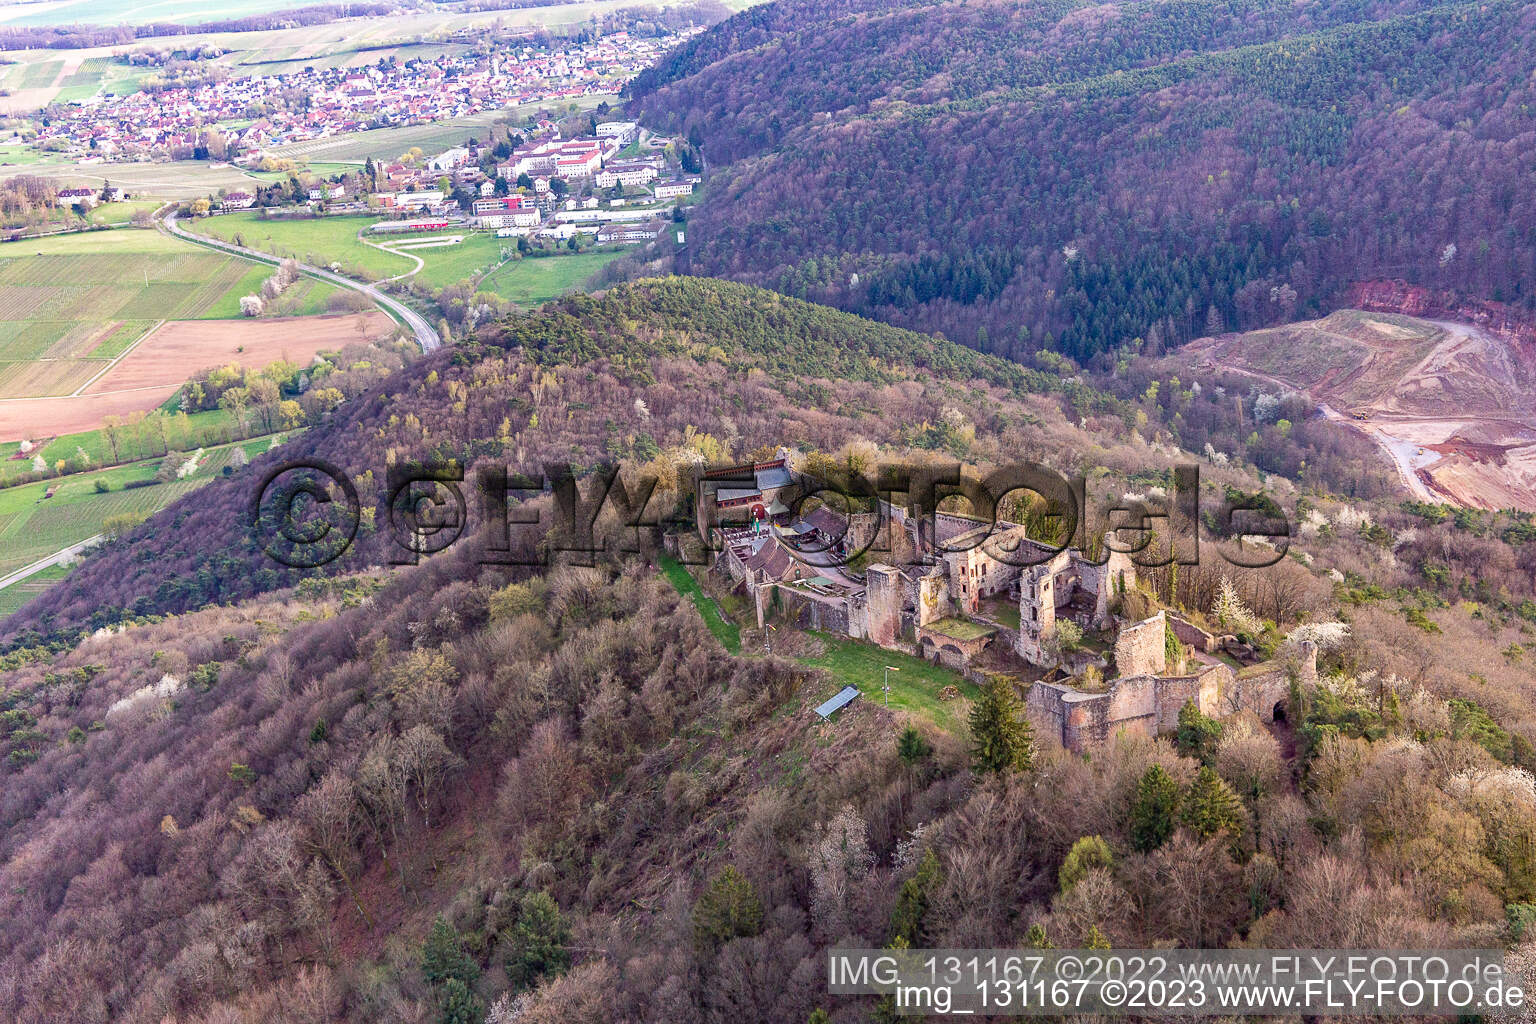 Madenburg in Eschbach im Bundesland Rheinland-Pfalz, Deutschland aus der Luft betrachtet